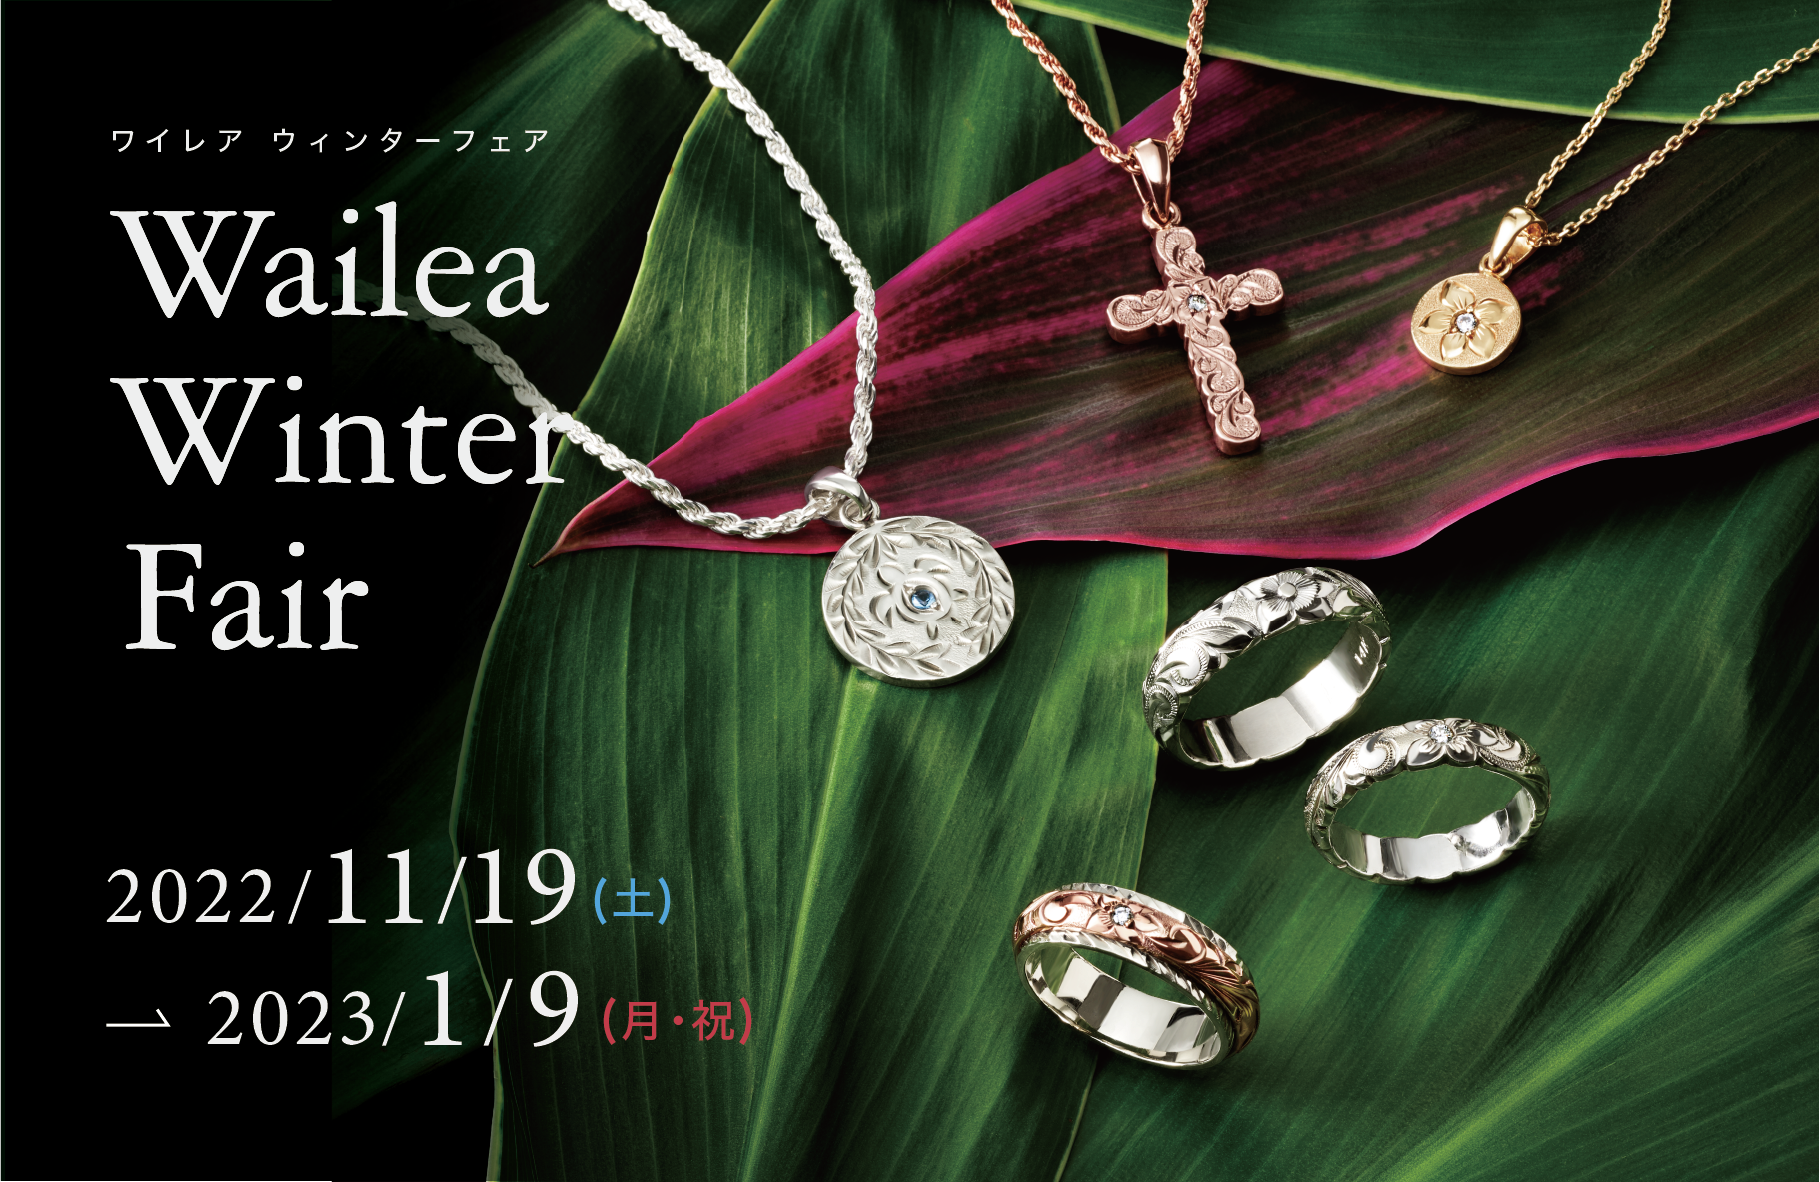 2022/11/19(土)から】Wailea Winter Fair開催 – The Hawaiian Jewelry